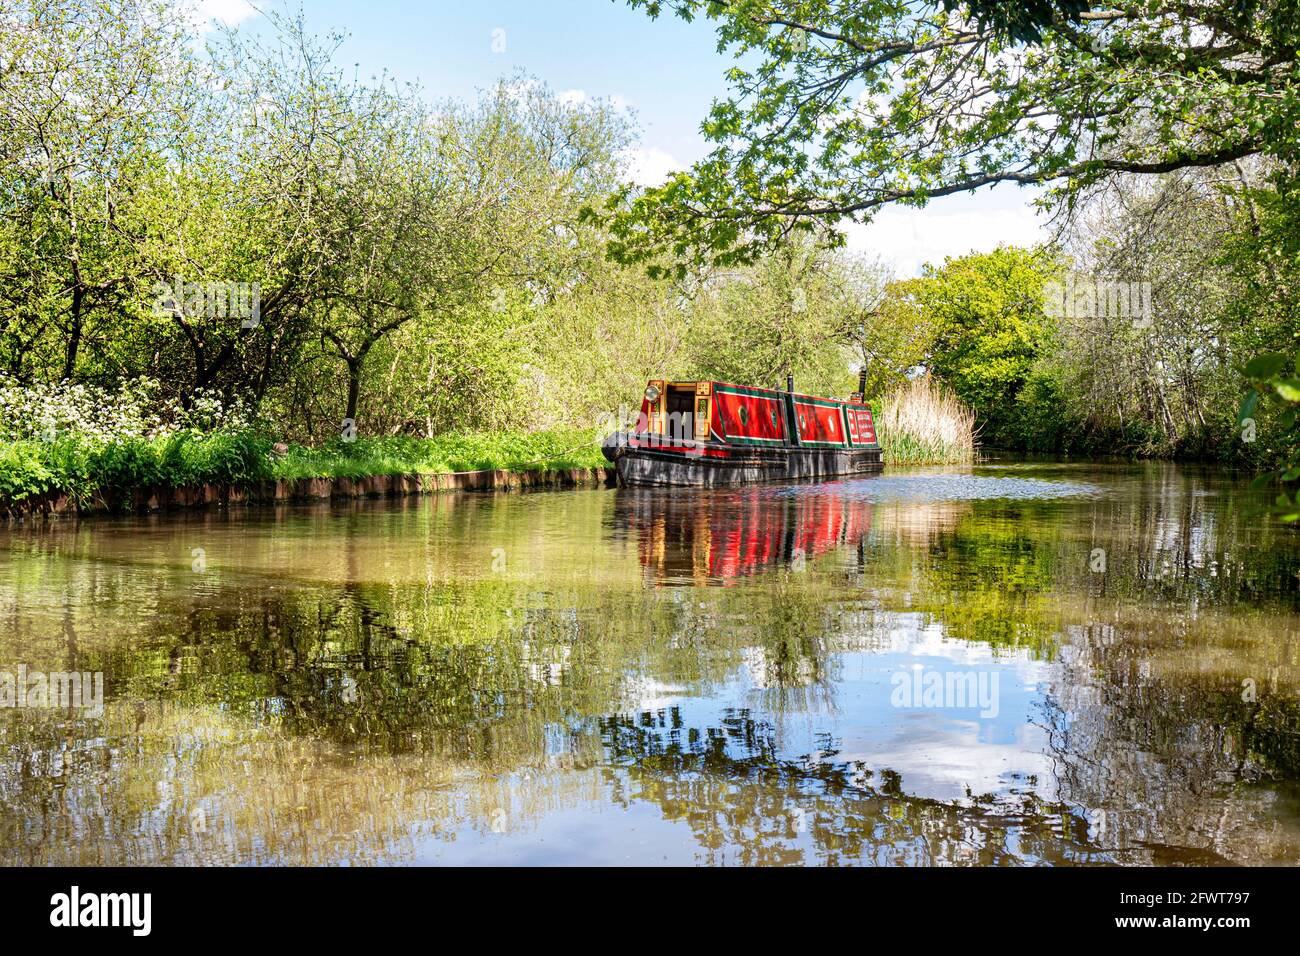 RIVER WEY Traditionelles Schmales Boot auf dem River Wey flussabwärts von High Bridge, das an einem noch sonnigen Sommerfrühling für ein Mittagessen vor Anker liegt Stockfoto